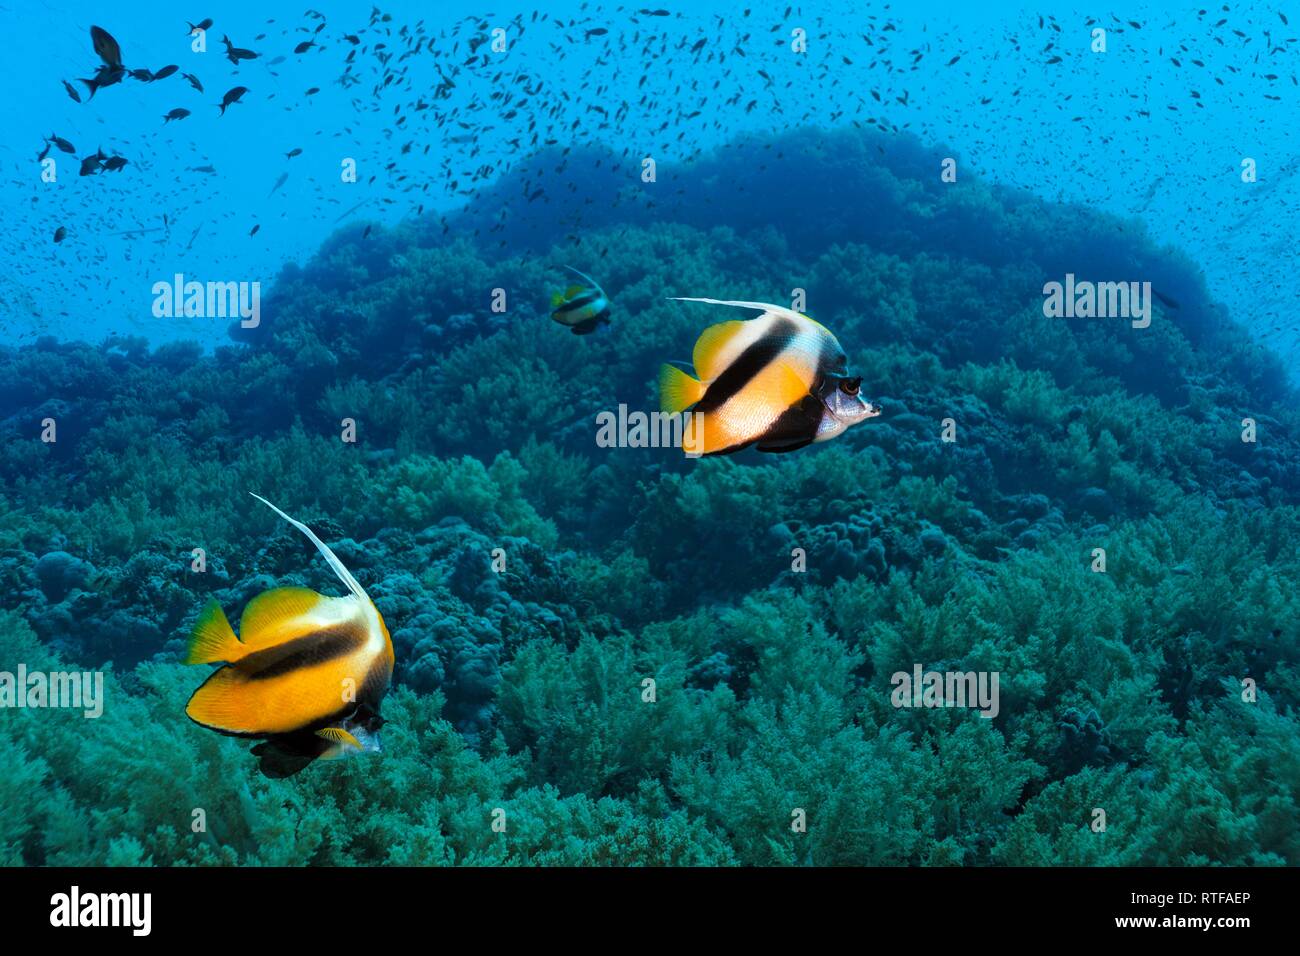 Red Sea bannerfishes (Heniochus intermedius) swim over coral reef, Red Sea, Egypt Stock Photo